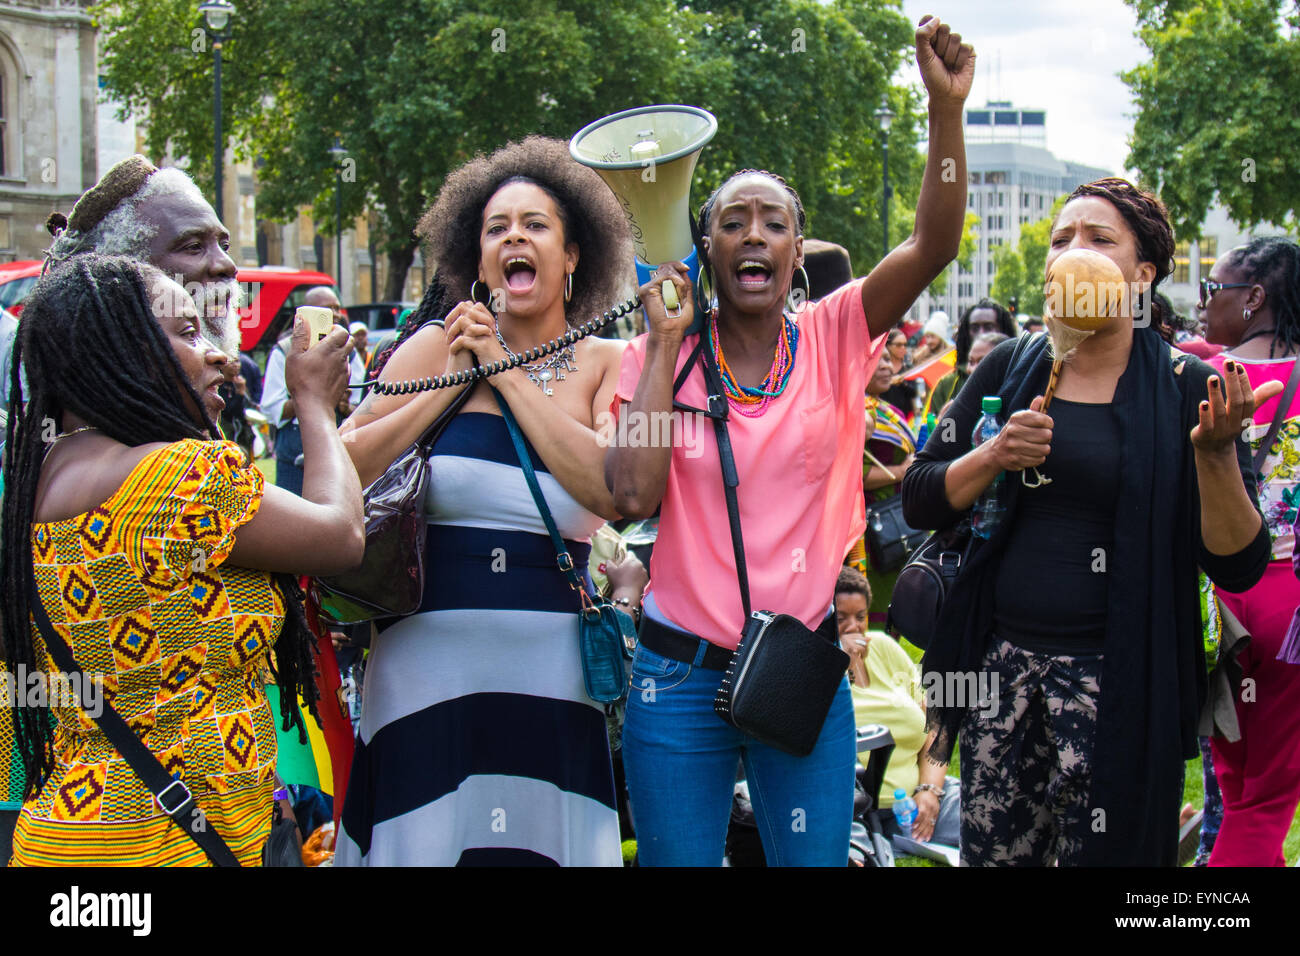 Grösserer Square, Westminster, London, 1. August 2015. Tausende von schwarzen Londoner, Rastafarians und ihren Anhängern kommen am Parliament Square nach einem Marsch von Brixton, als Teil der Rastafari-Bewegung UK Tag der Befreiung, auf Nachfrage Reparationen von der britischen Regierung für den Sklavenhandel. Stockfoto